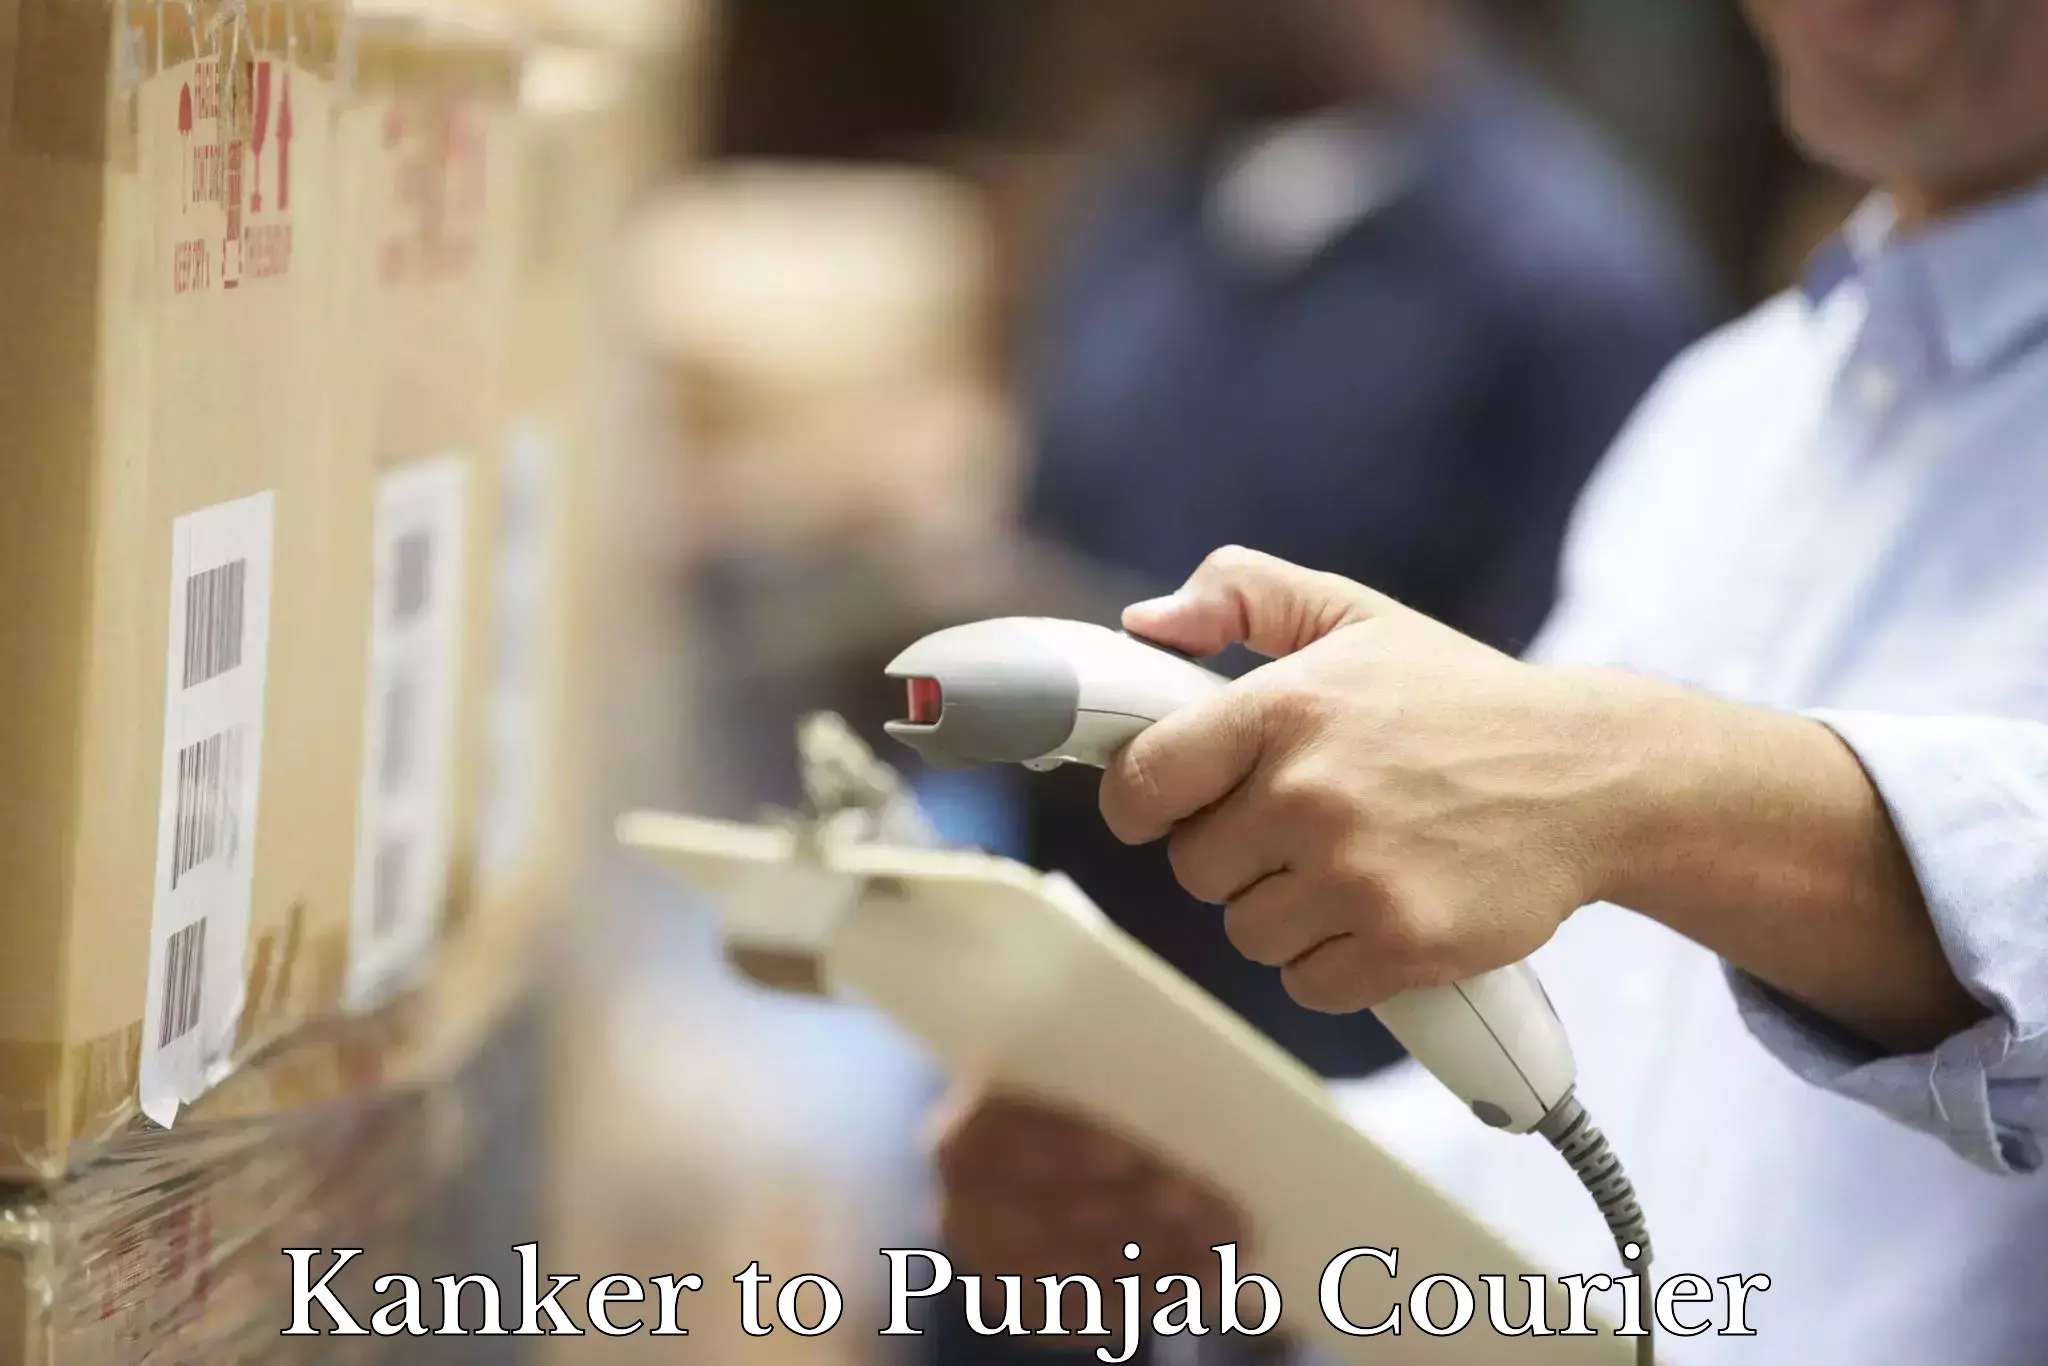 International parcel service Kanker to Goindwal Sahib